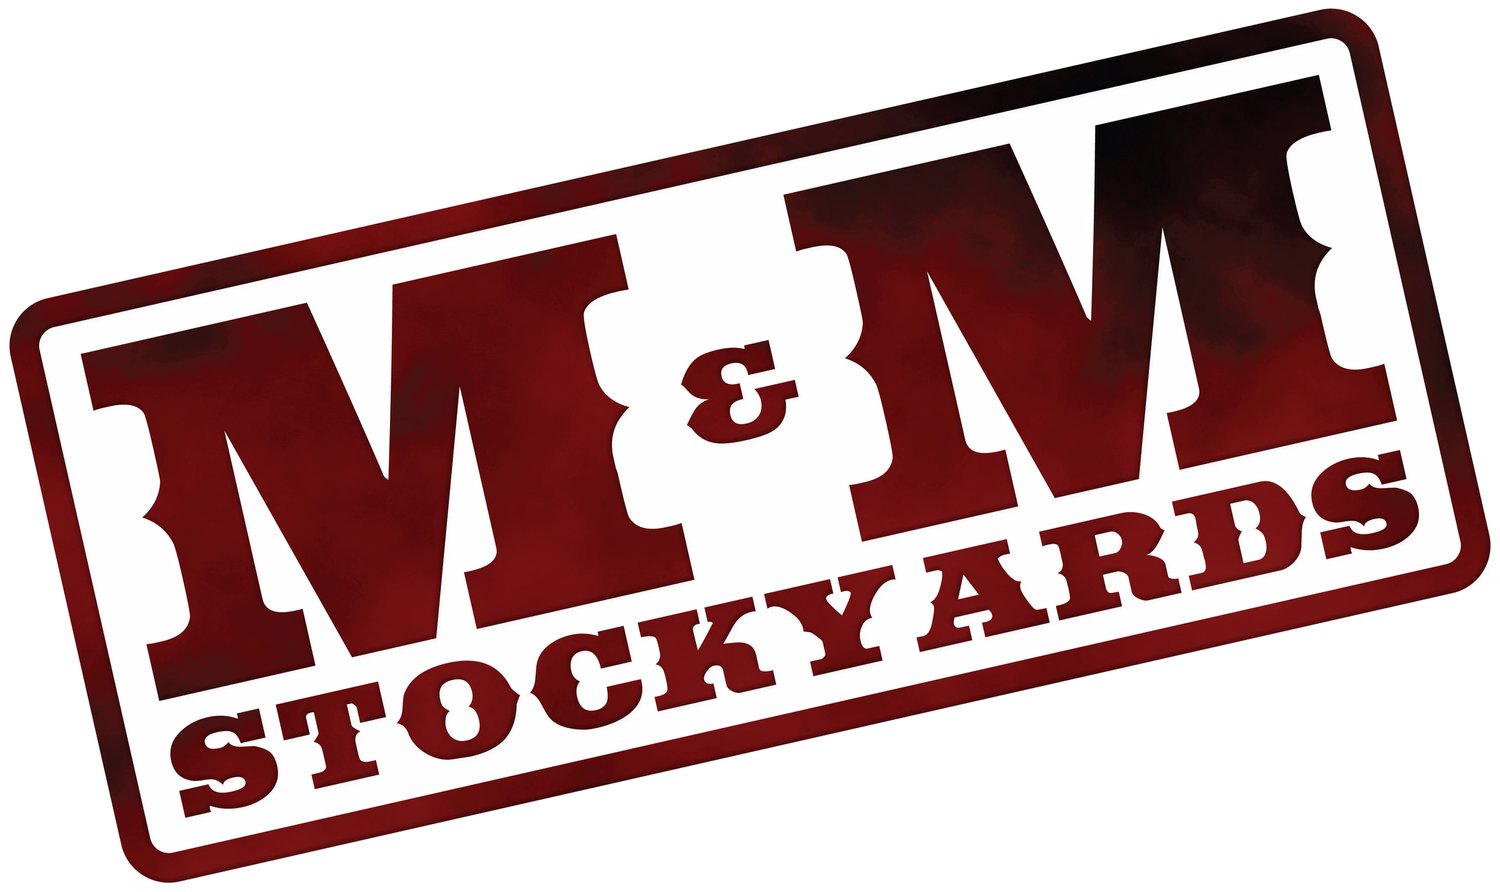 M &amp; M Stockyards